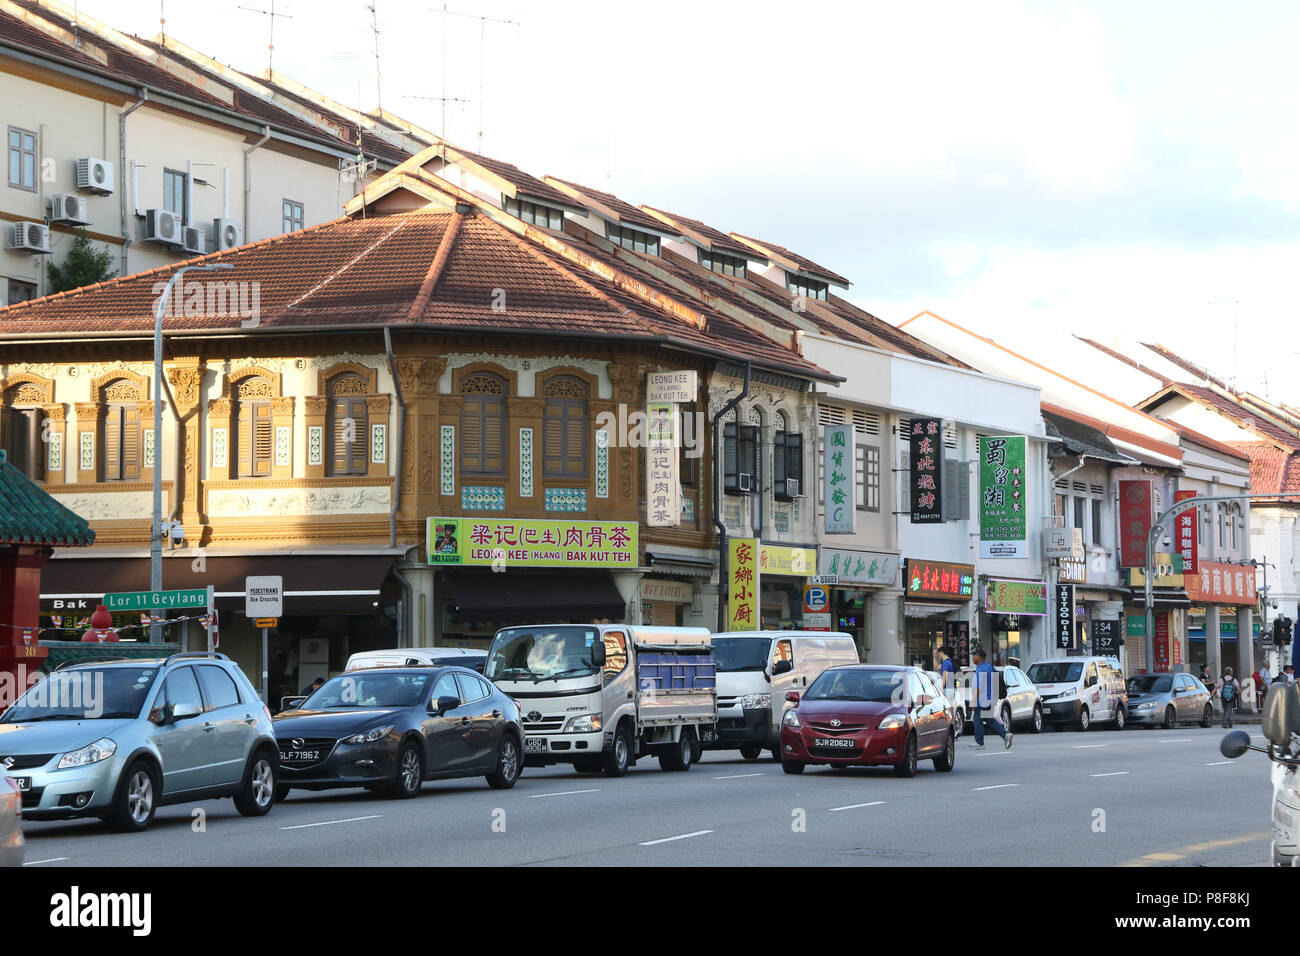 Buildings on Geylang Road, Geylang, Singapore. Stock Photo